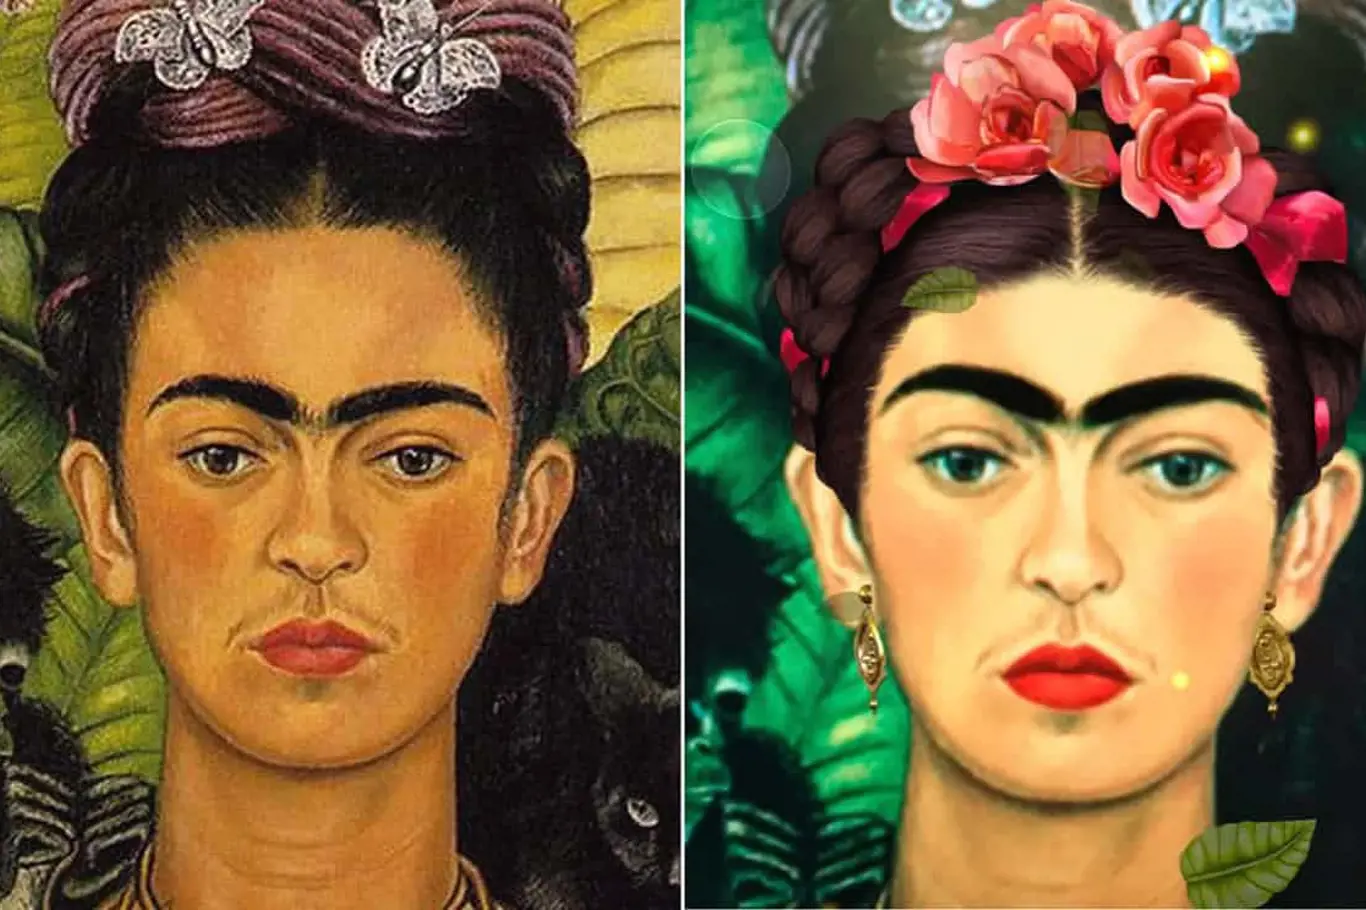 Upravený portrét Fridy Kahlové, použitý pro loňský Mezinárodní den žen, čelil kritice kvůli nadměrnému zesvětlení pleti a symetrickému zarovnání tváře